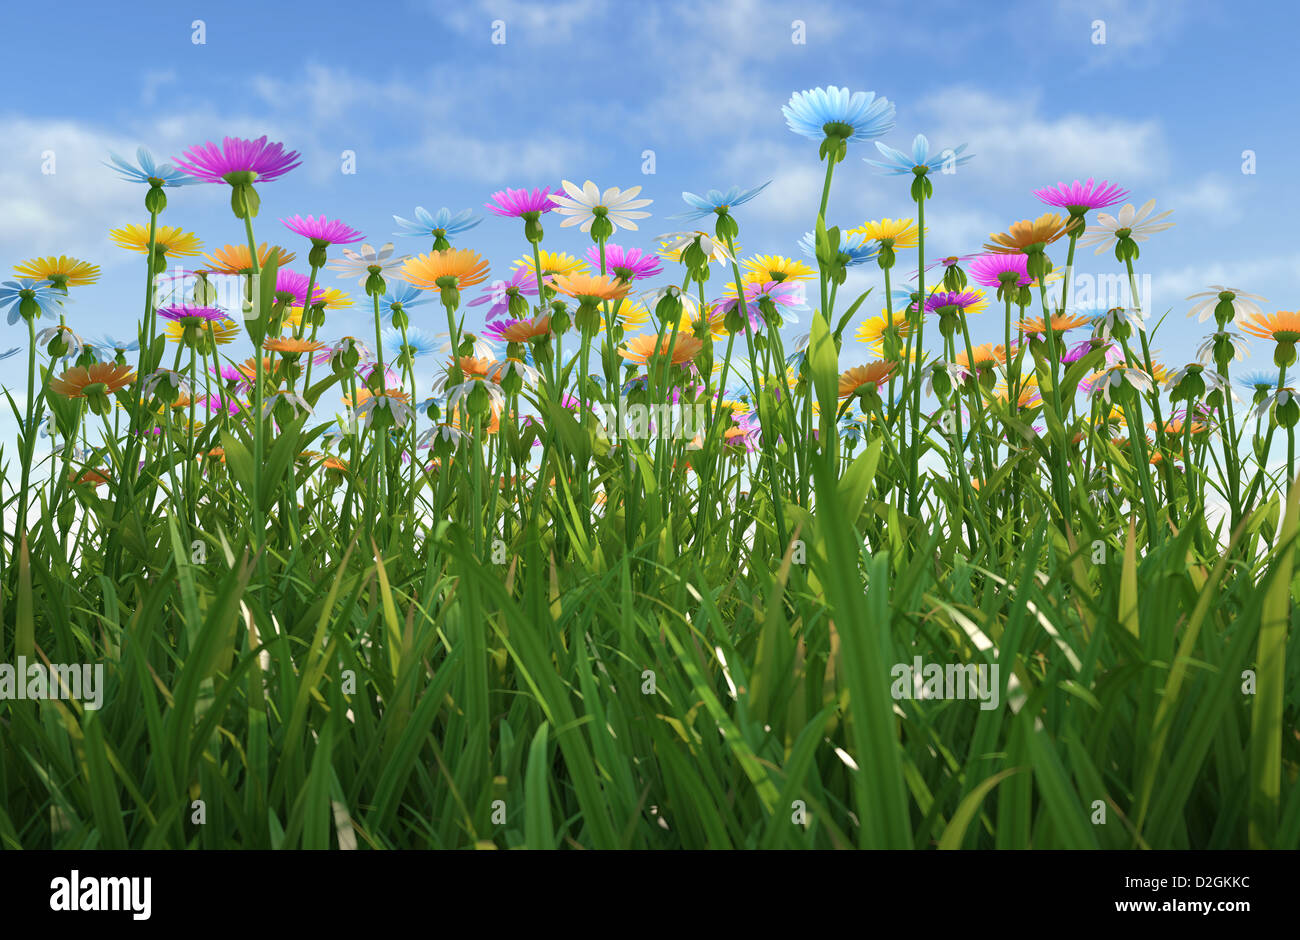 Nahaufnahme des Grases abgelegt, viele bunte Blumen, von einer Seite mit enger Rasen gesehen. Stockfoto